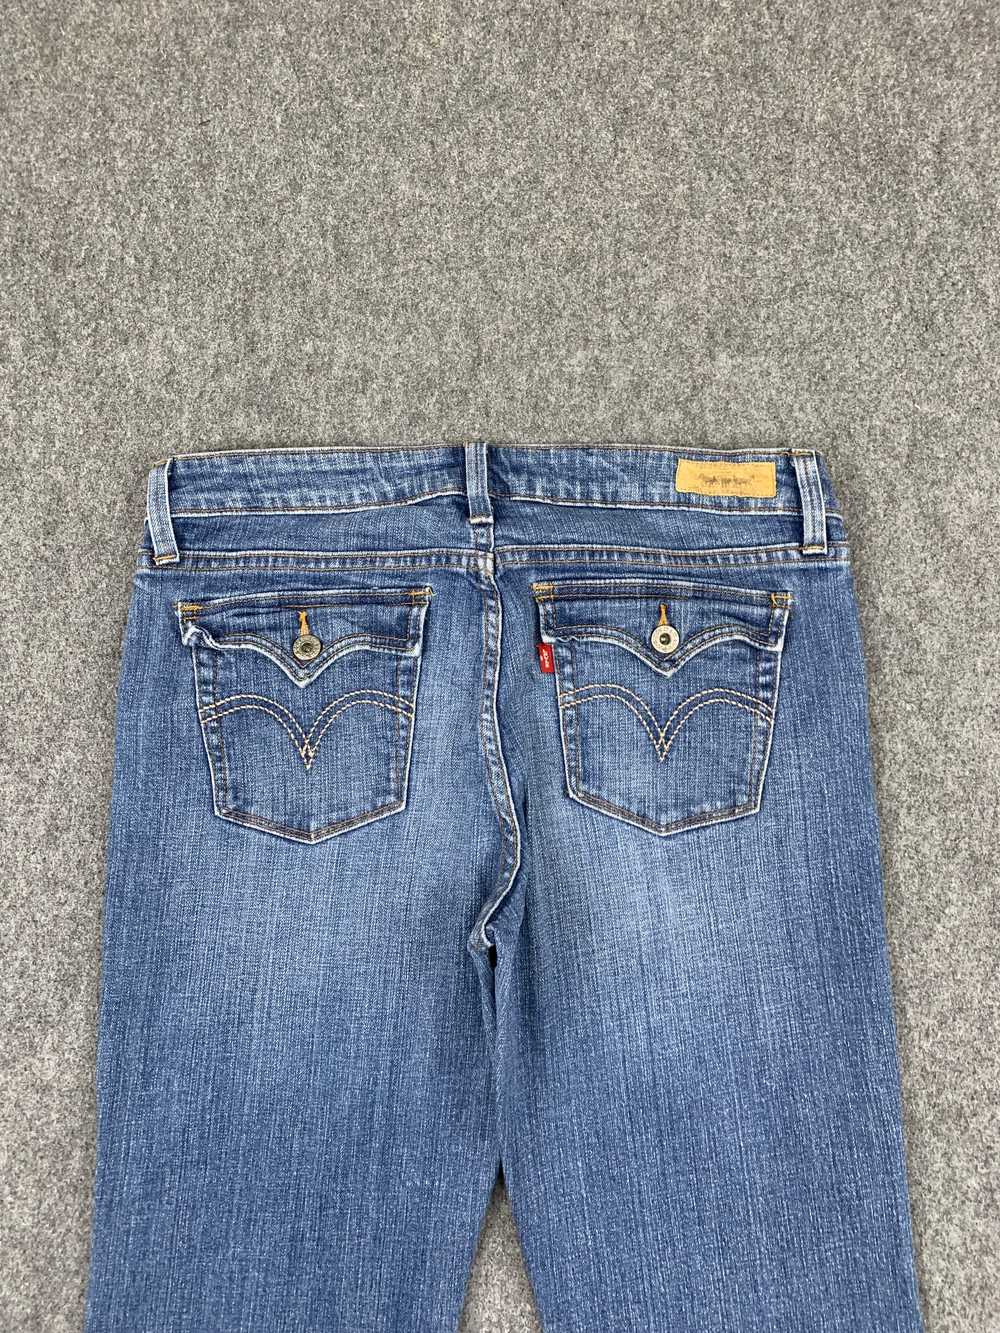 Vintage - Vintage Levis 545 Flared Bootcut Jeans - image 4